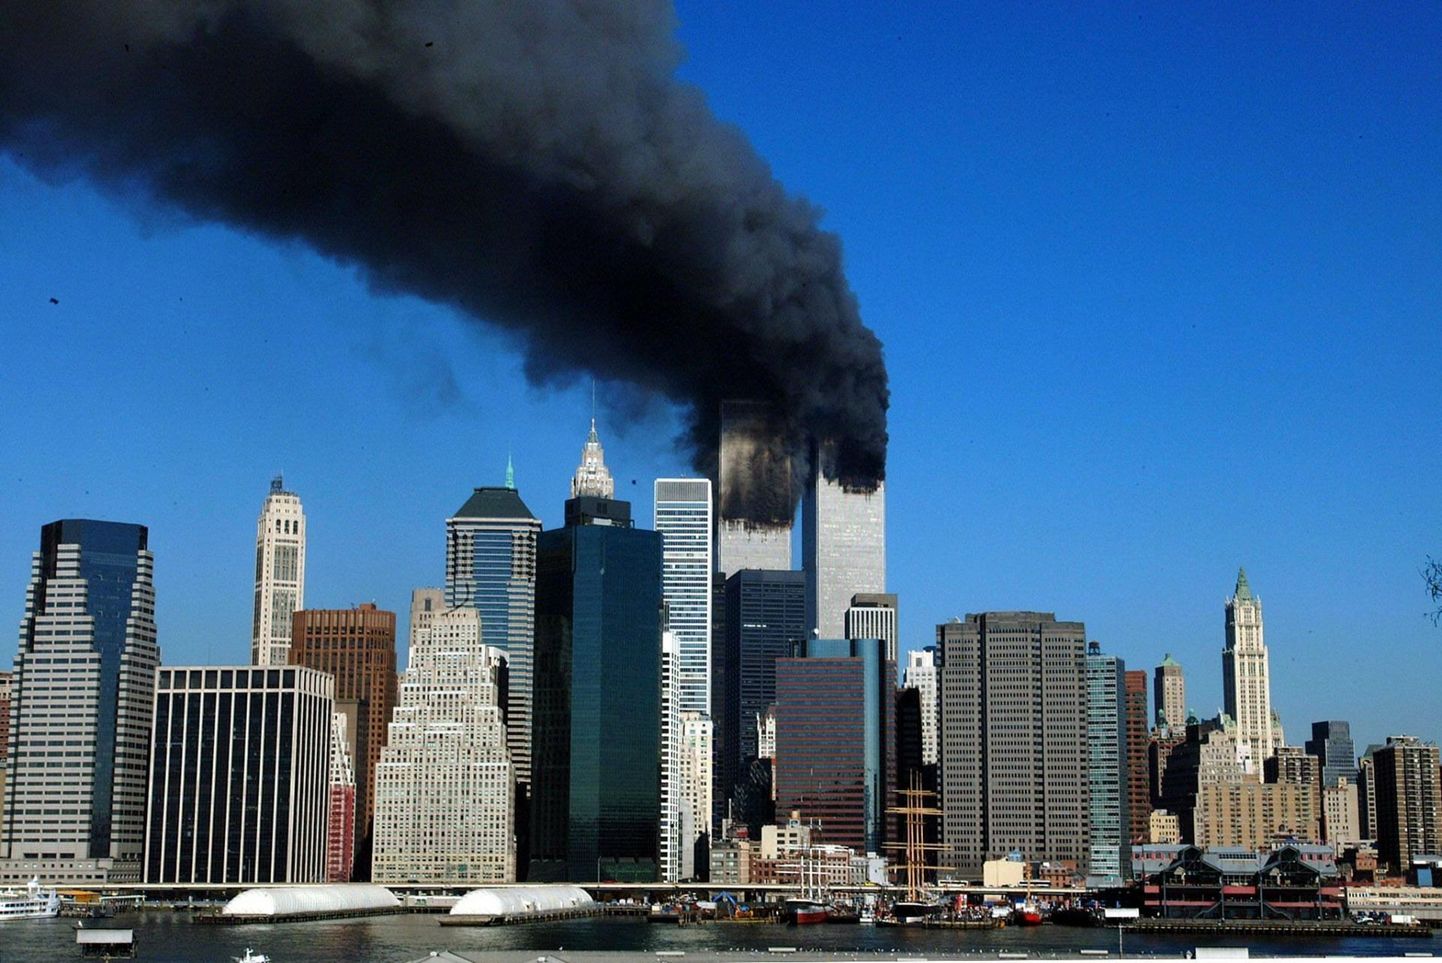 11. septembril 2001 sööstsid islamistidest terroristide poolt kaaperdatud reisilennukid New Yorgis Maailma Kaubanduskeskuse kaksiktornidesse, põhjustades ligi 3000 inimese hukkumise. 22 aastat hiljem on osad liberaalsetes väärtustes kahtlevad ameeriklased asunud õigustama omaaegsete ründajate praeguste mõttekaaslase ellusuhtumist ja väärtusi.